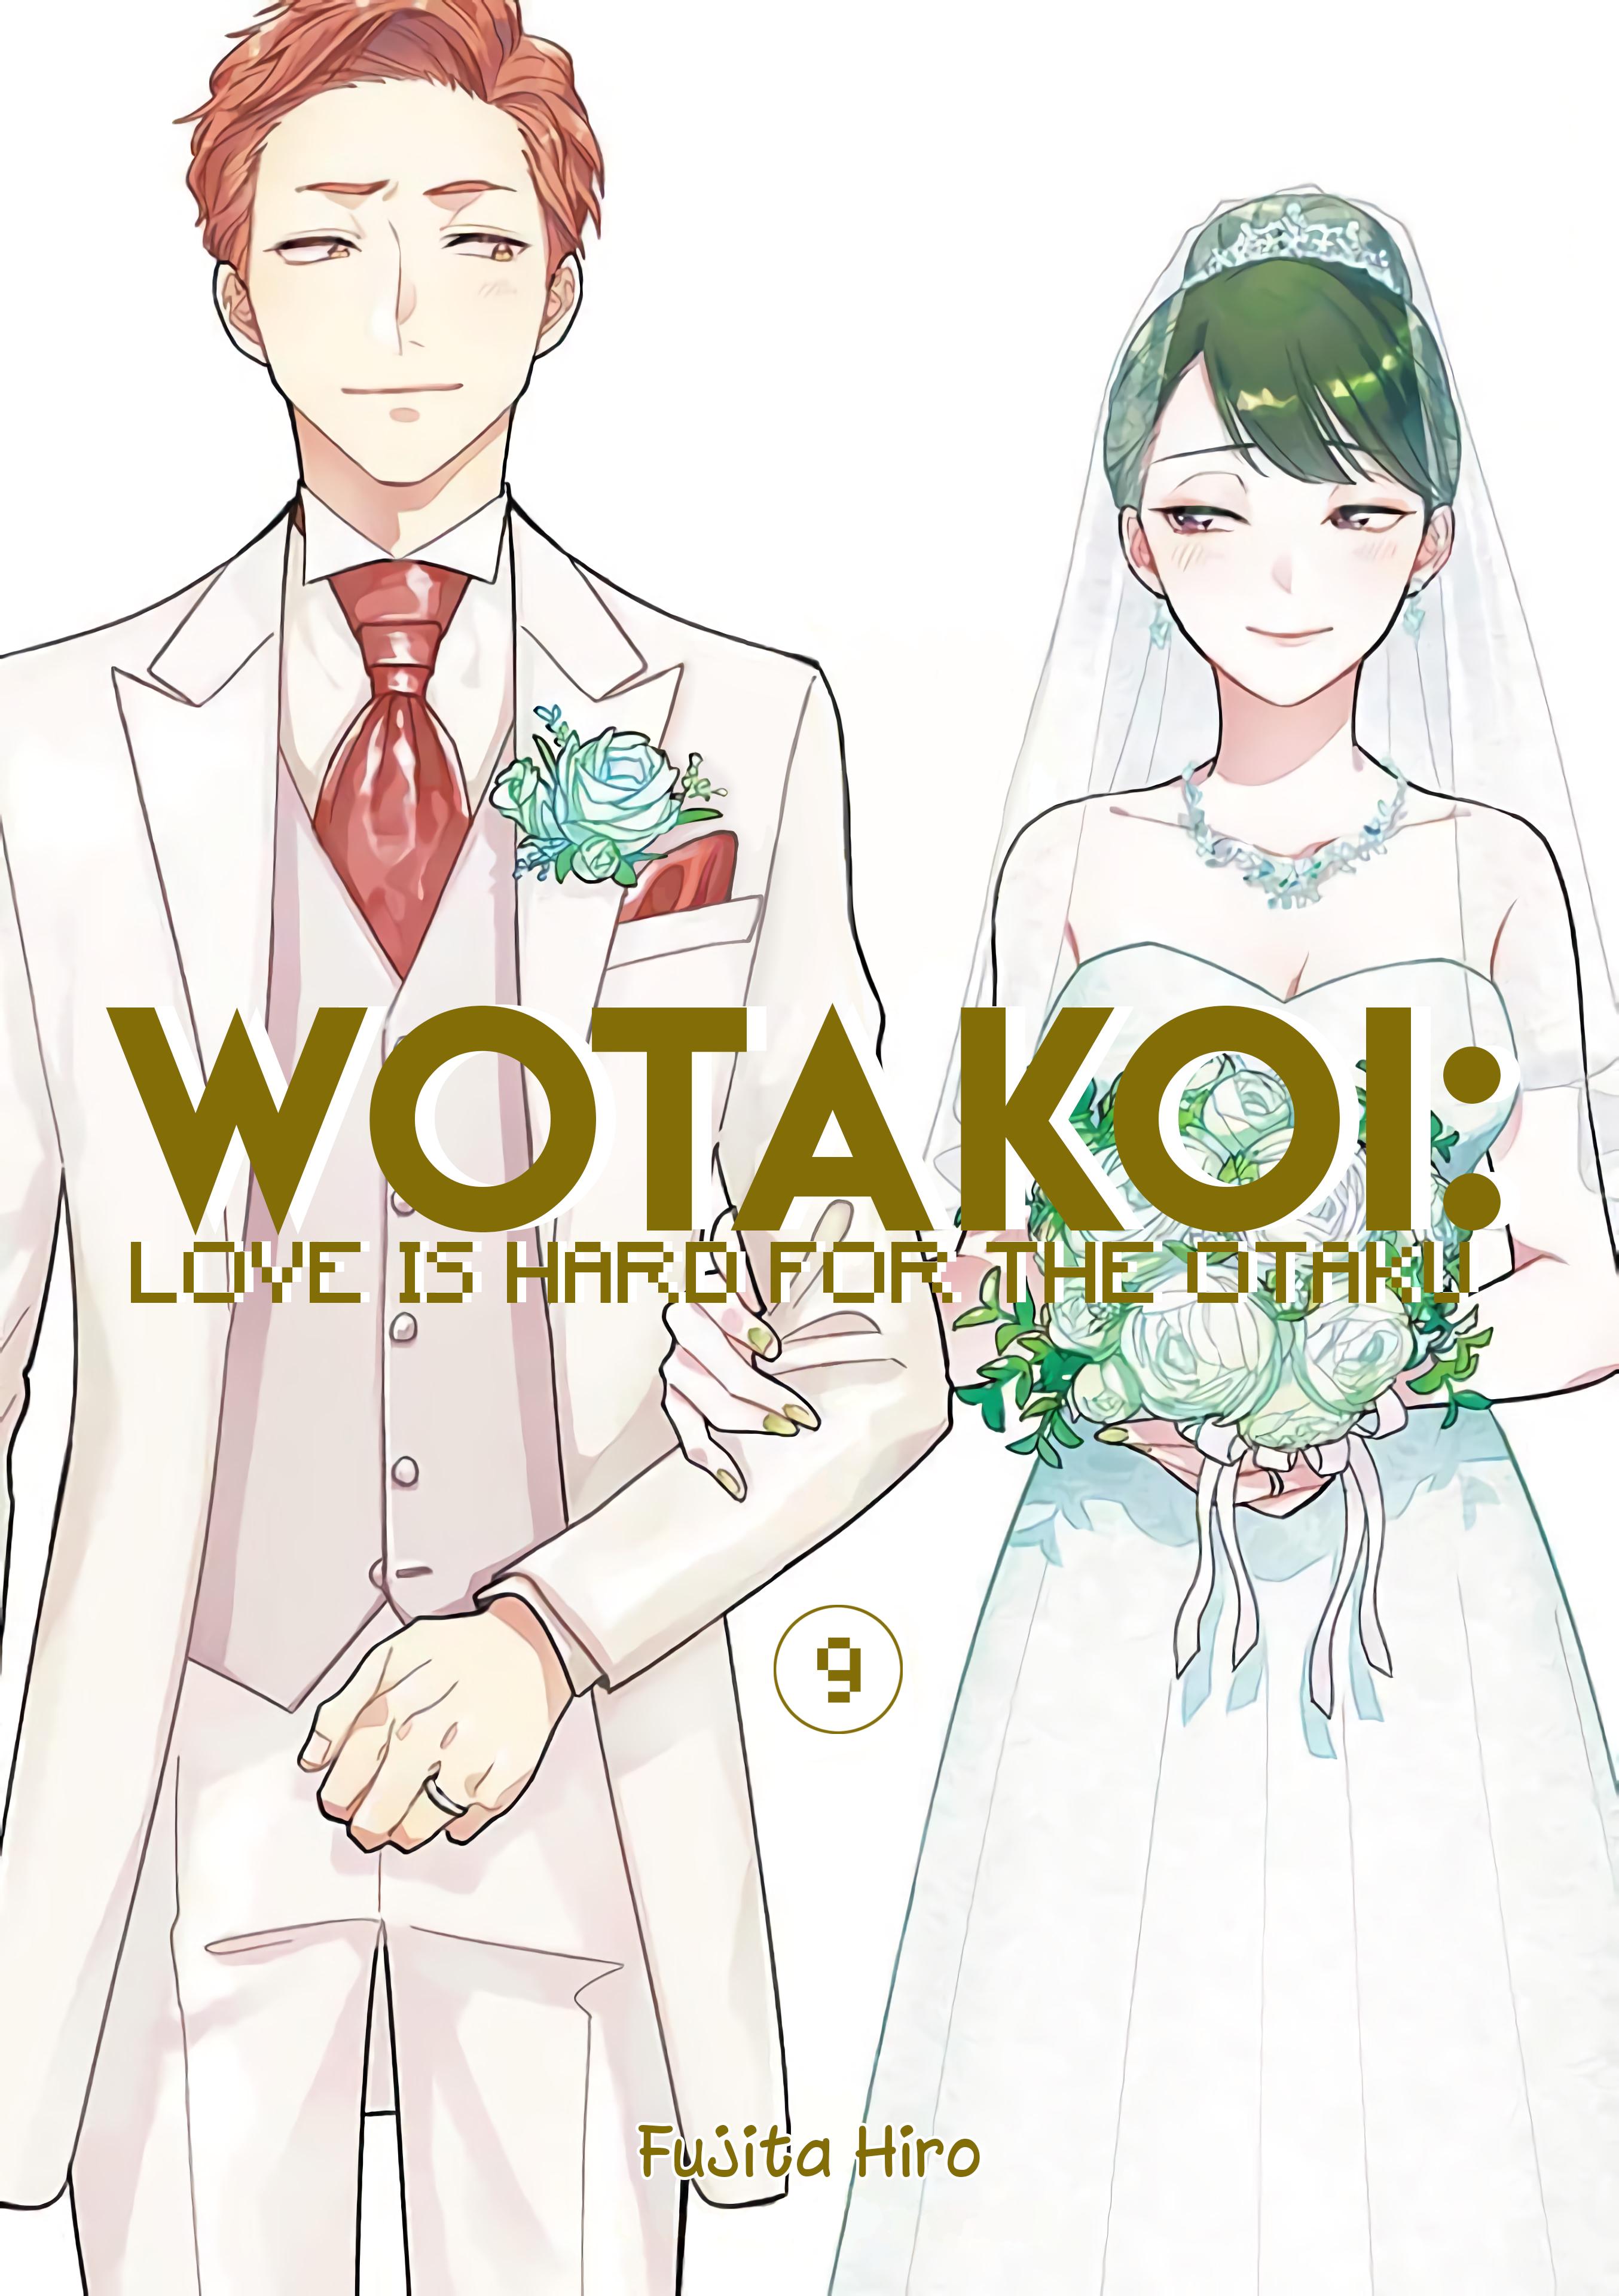 Read Wotaku Ni Koi Wa Muzukashii Vol.9 Chapter 65.2: Marriage 2